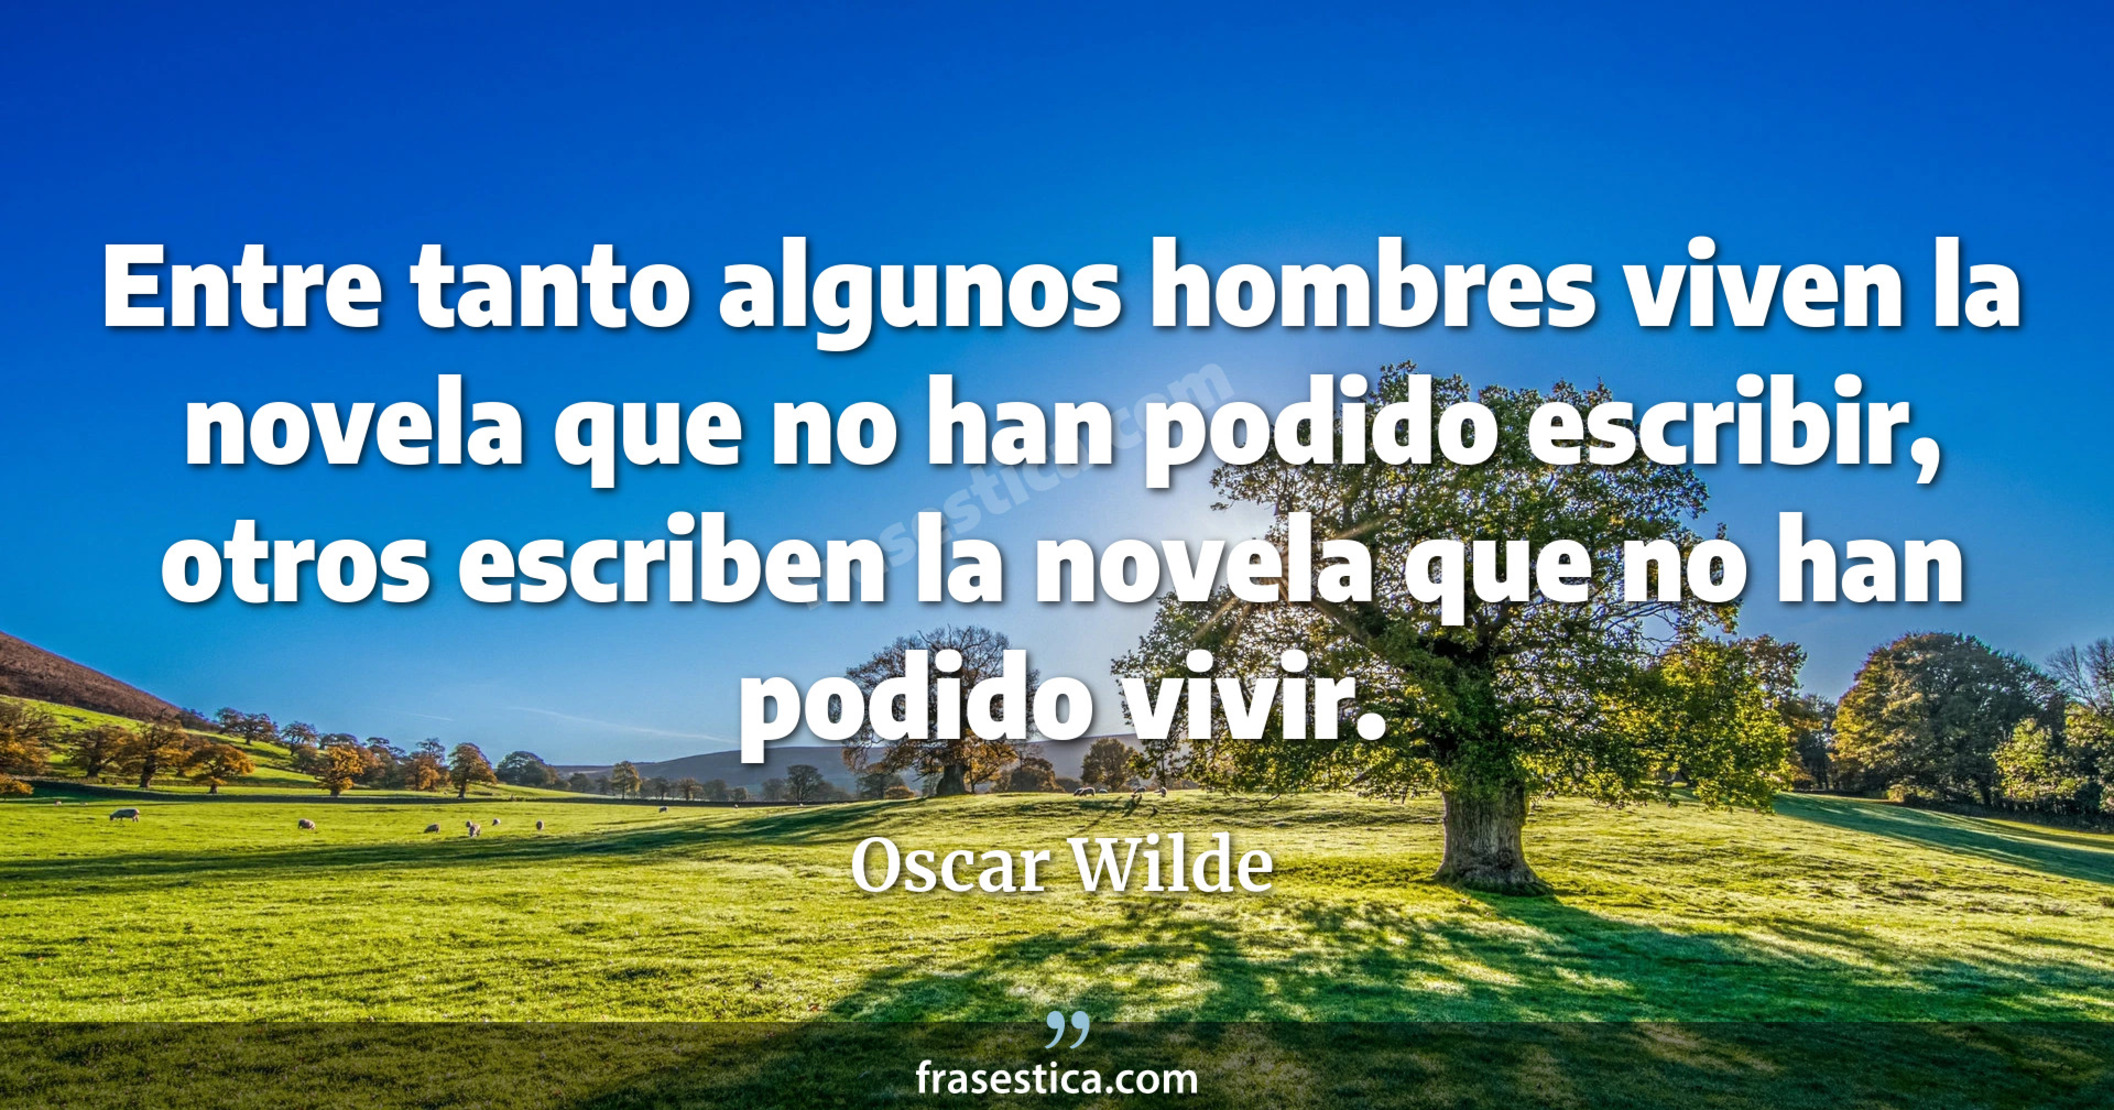 Entre tanto algunos hombres viven la novela que no han podido escribir, otros escriben la novela que no han podido vivir. - Oscar Wilde